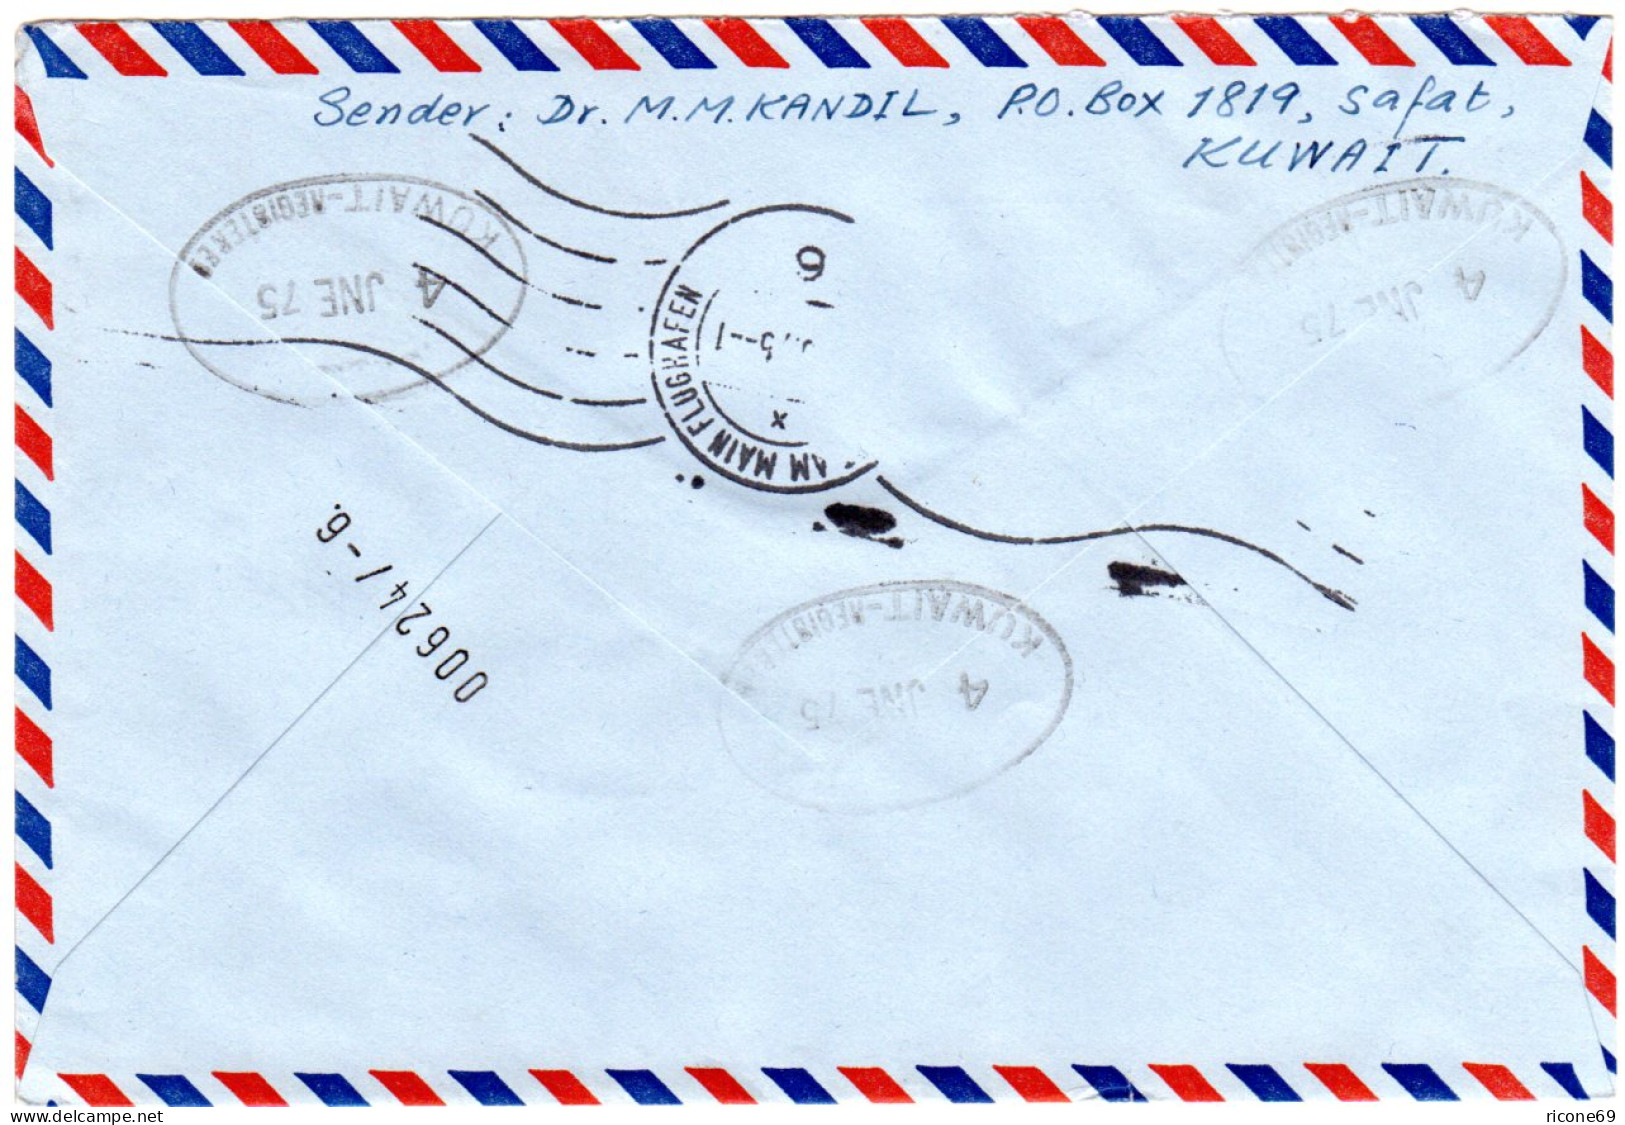 Kuwait 1975, 90+100 F.  Auf Luftpost Einschreiben Express Brief N. Deutschland. - Asia (Other)